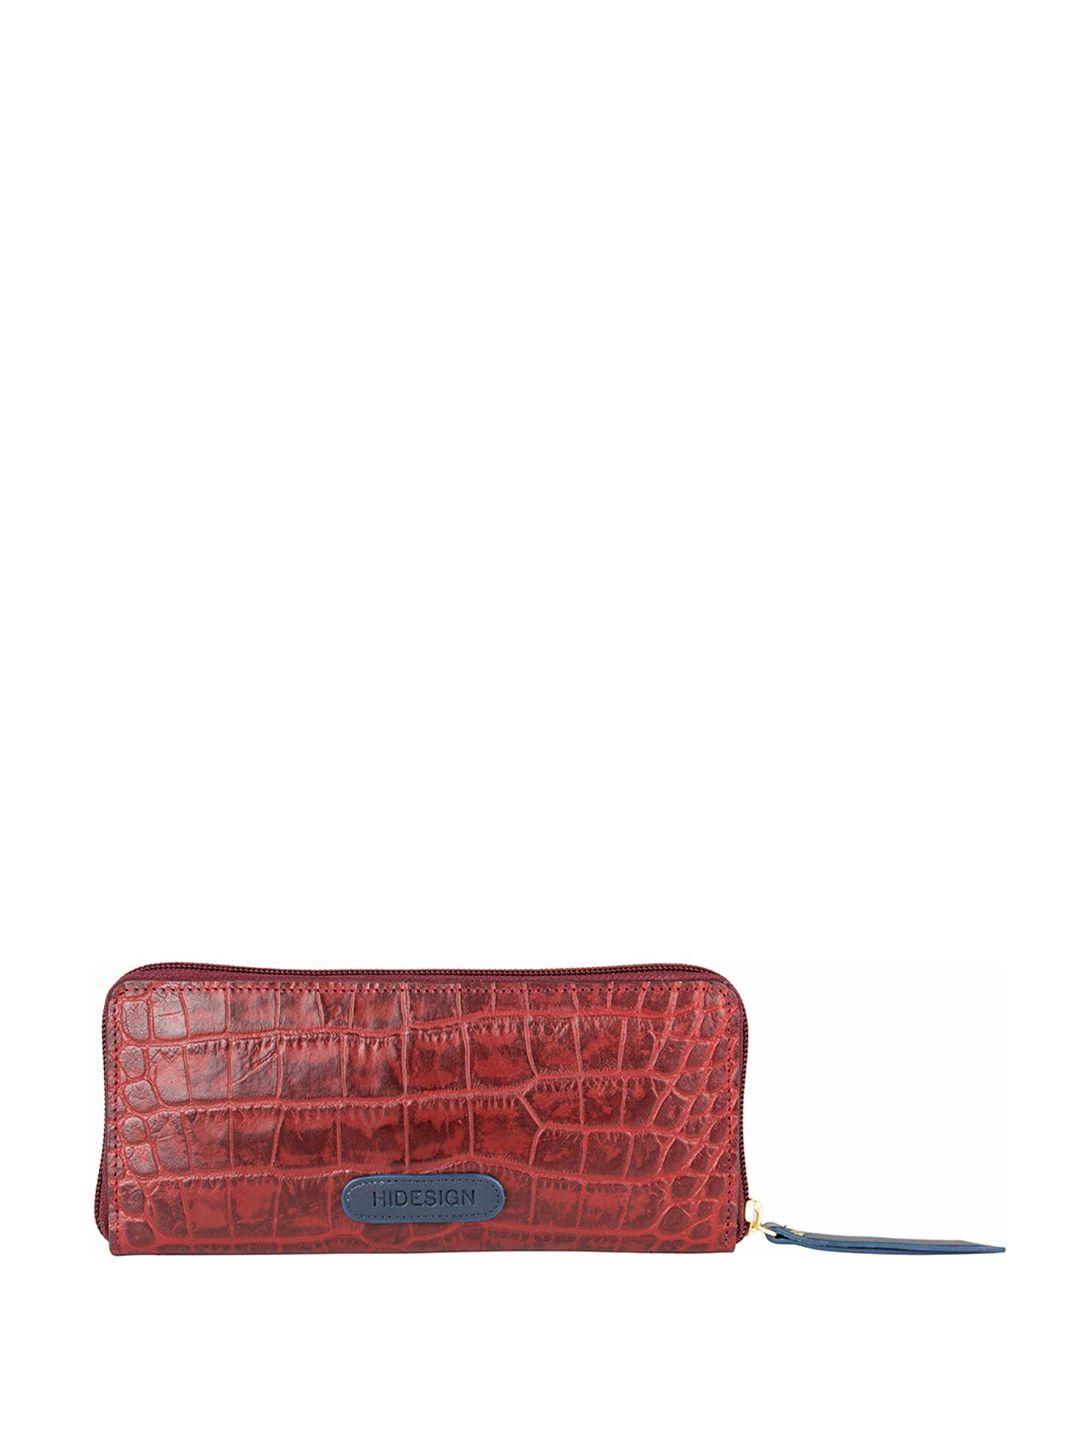 hidesign-animal-textured-purse-clutch